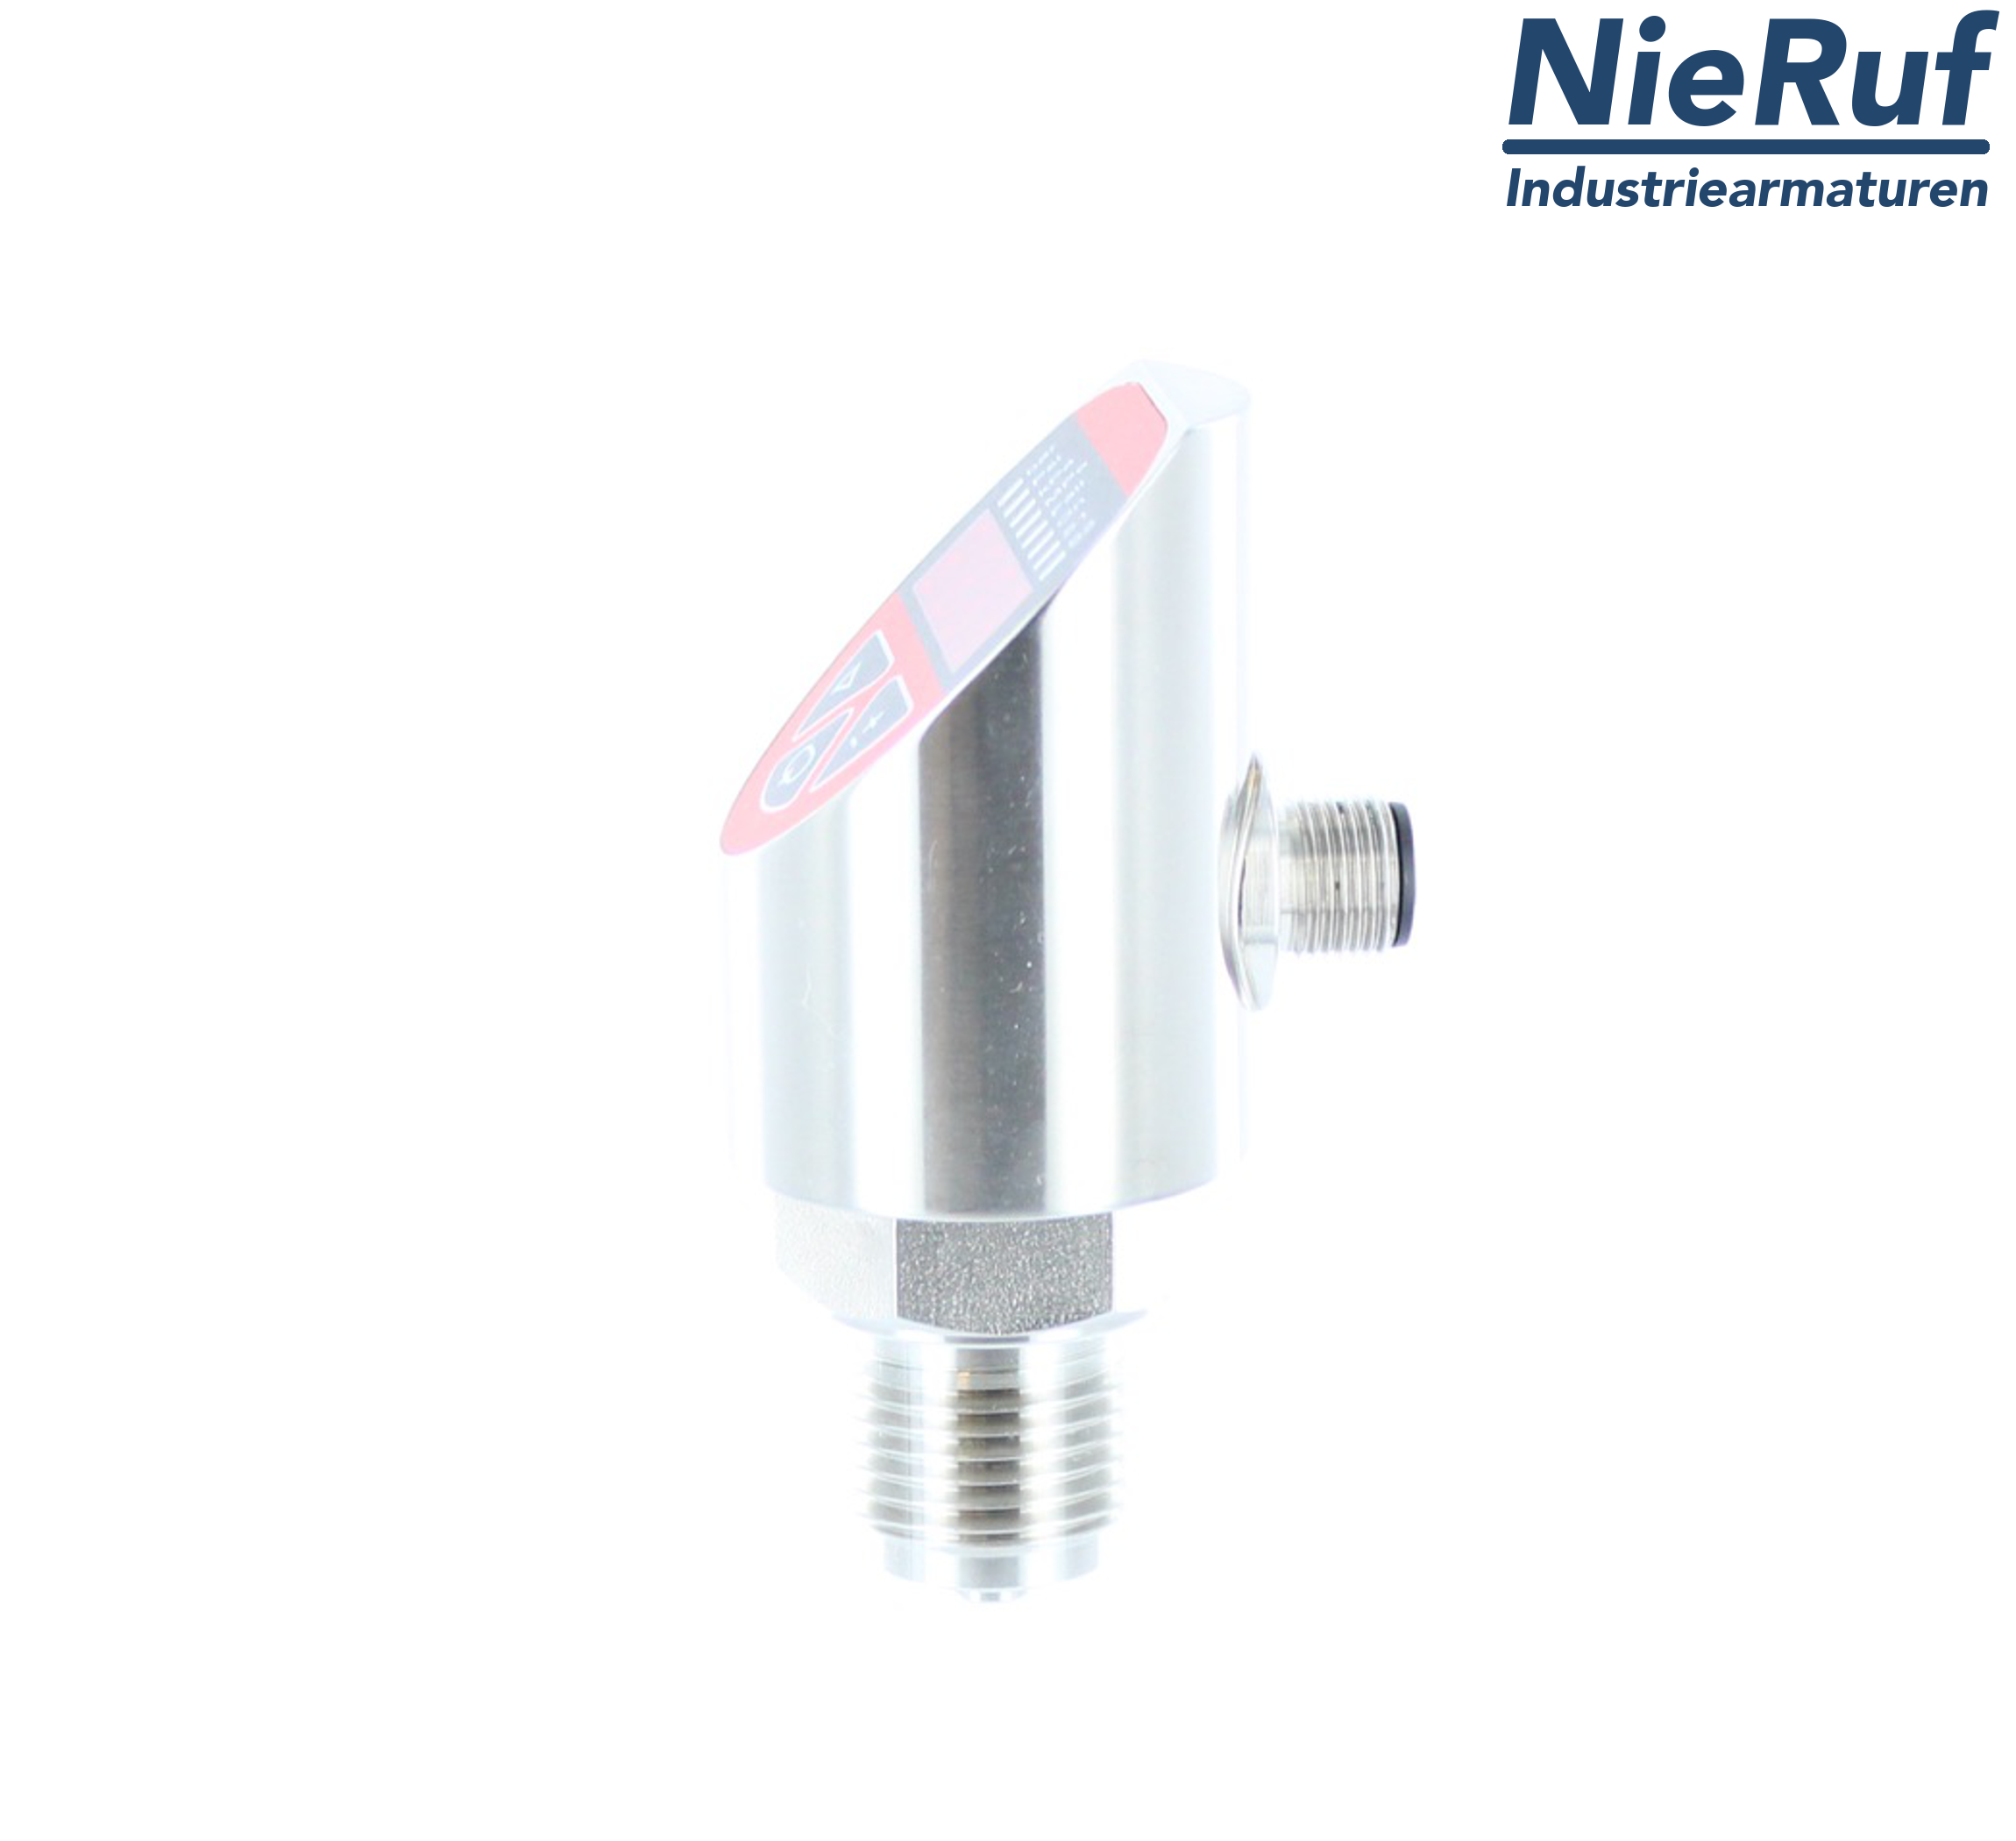 sensore di pressione digitale G 1/2" B IB  5-fili: 2xPNP, 1x4 - 20mA FPM 0,0 - 400,0 bar